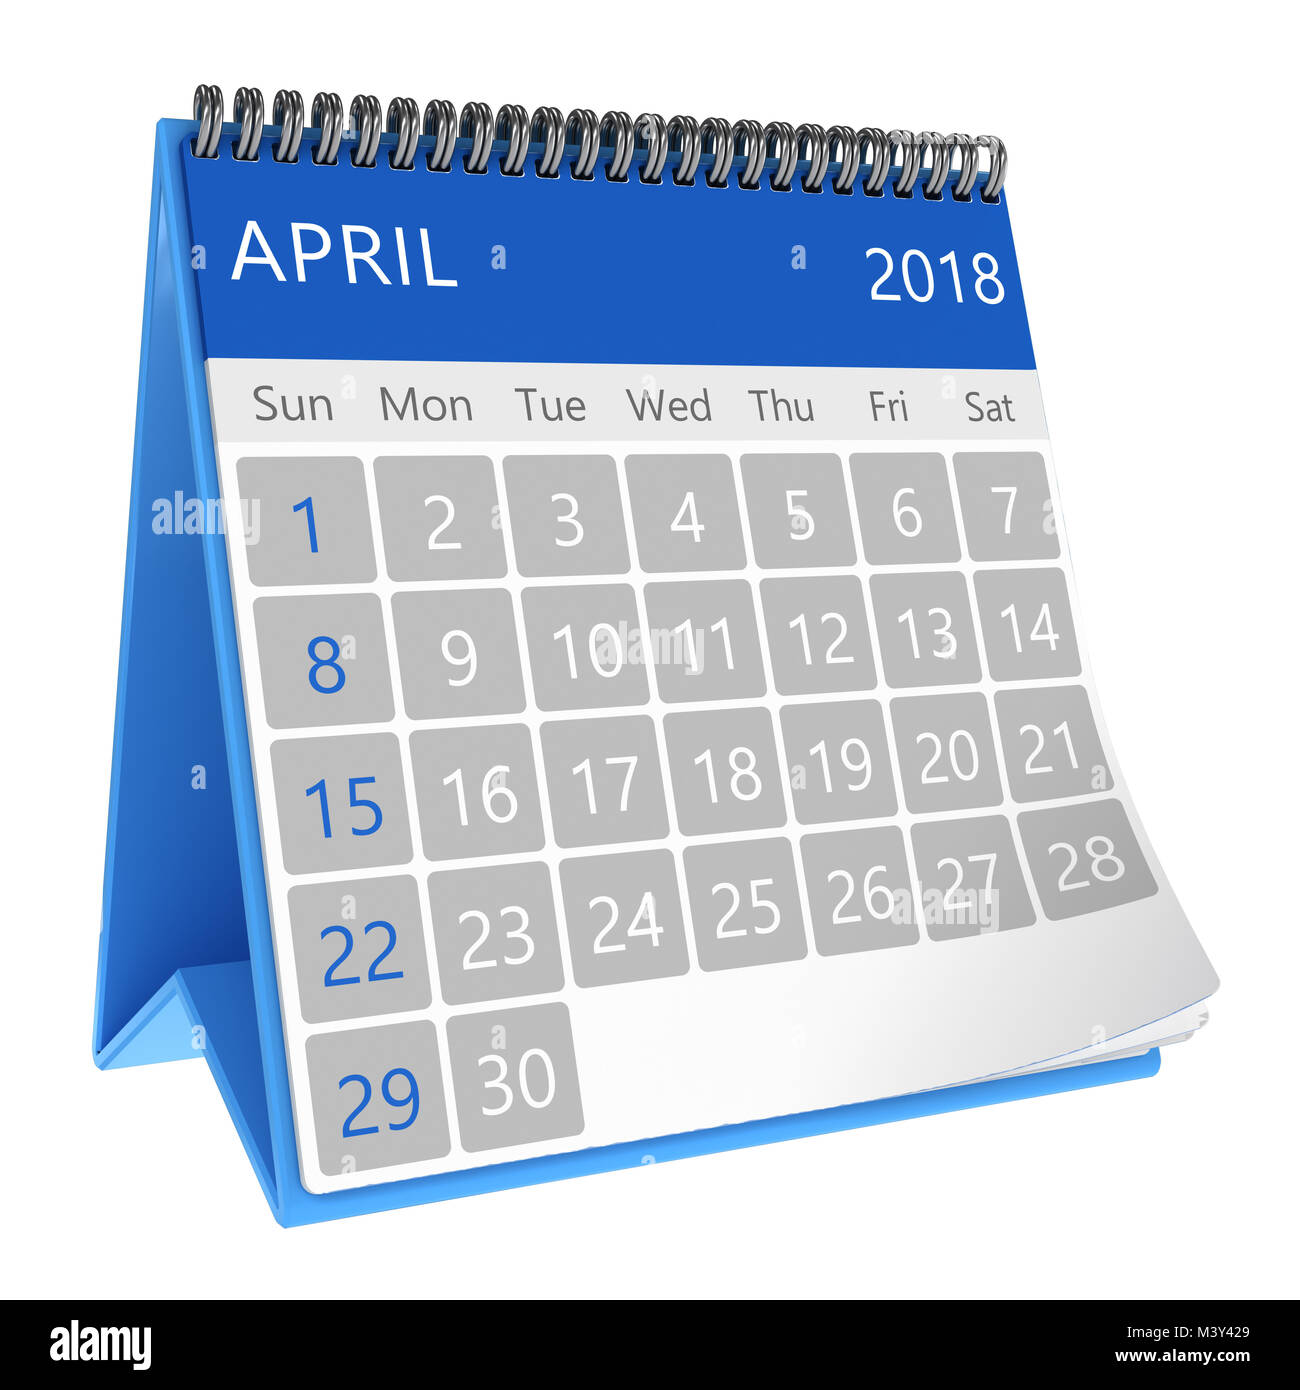 2018 Calendar Stock Photos & 2018 Calendar Stock Images - Alamy1300 x 1390